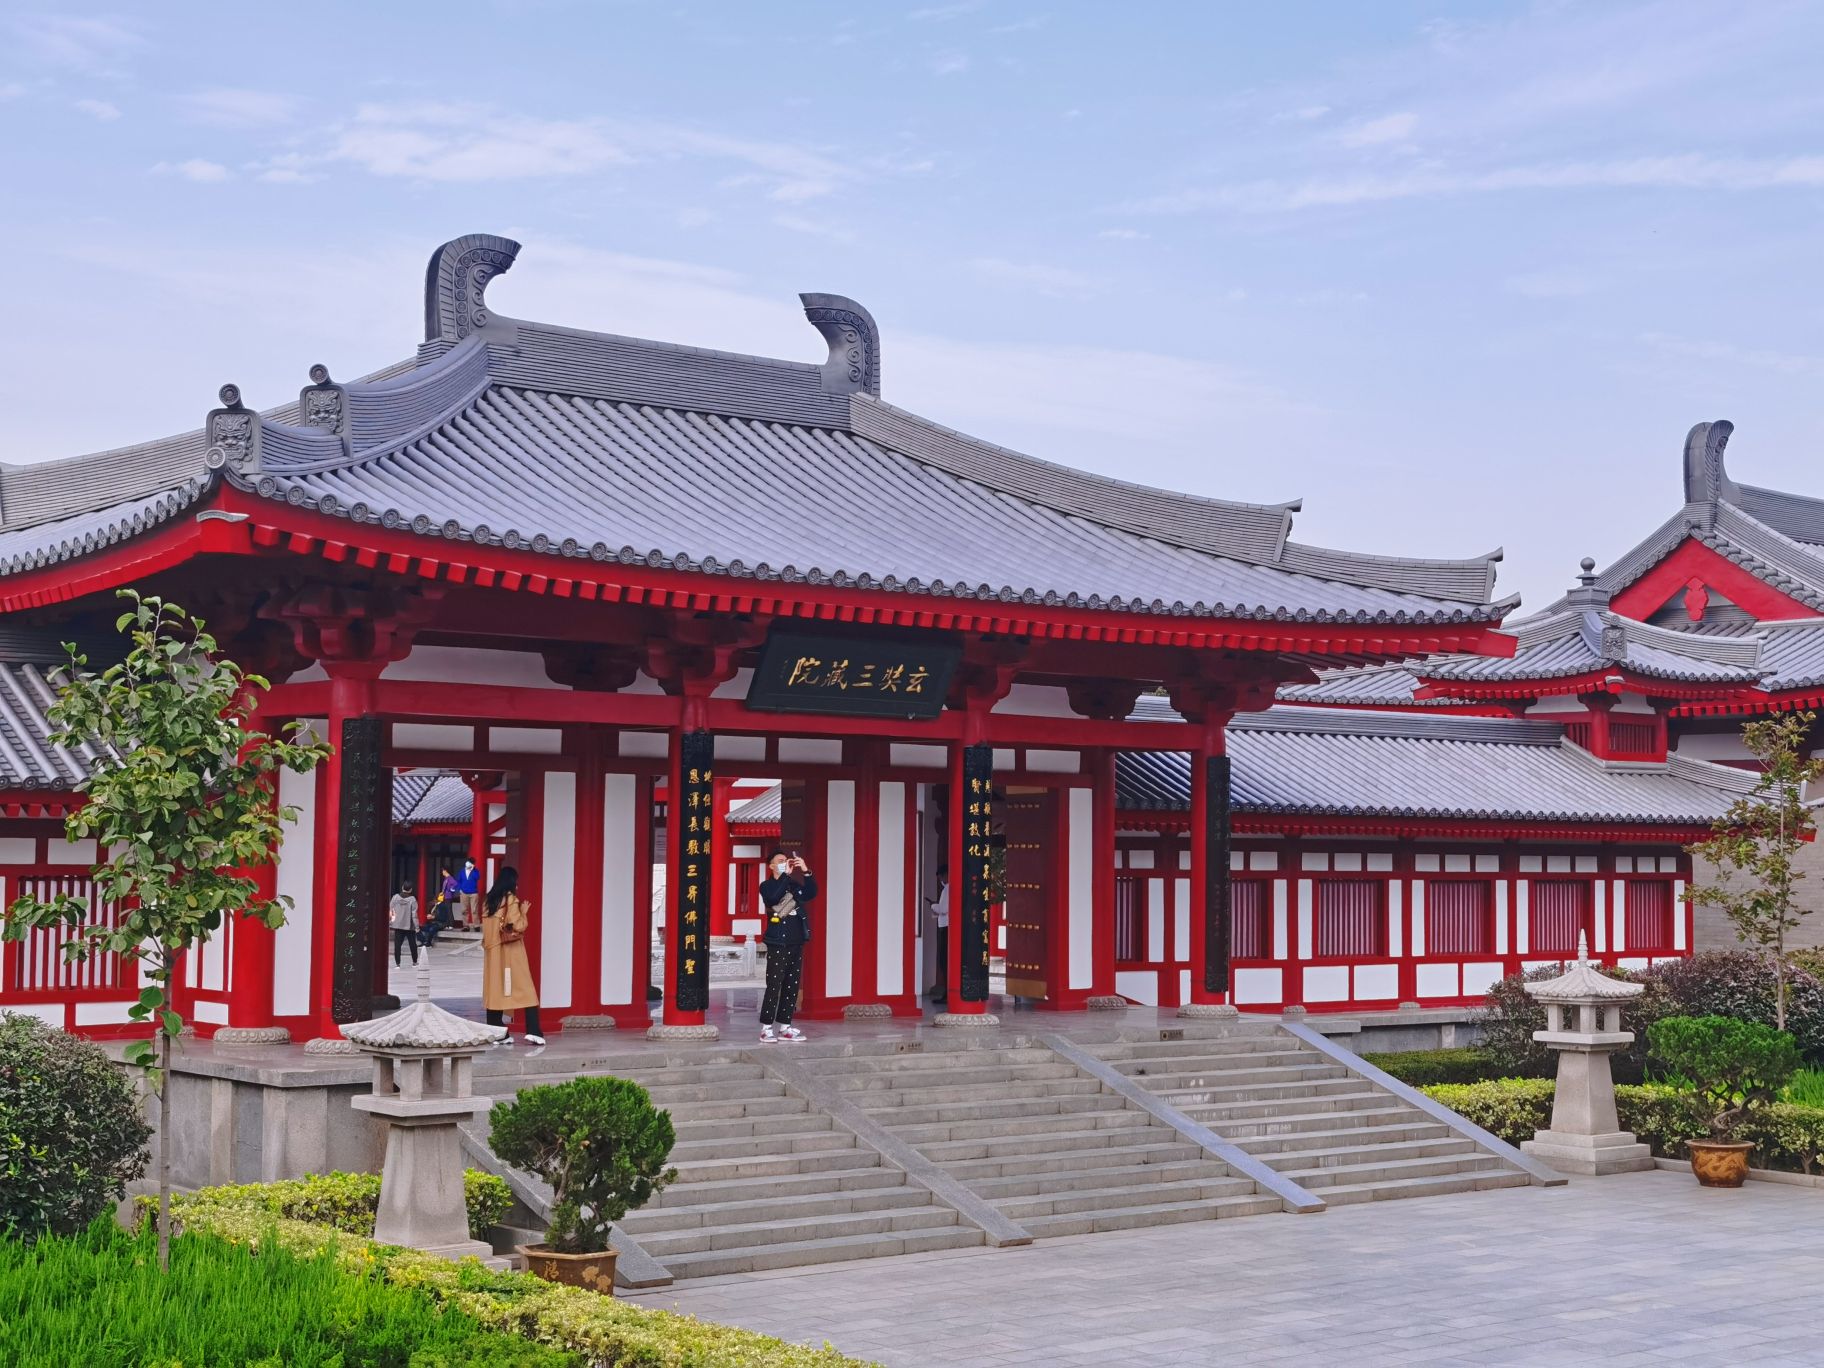 西安大雁塔景点, 大慈恩寺内作为唐代皇家寺院,是唐长安城内最著名